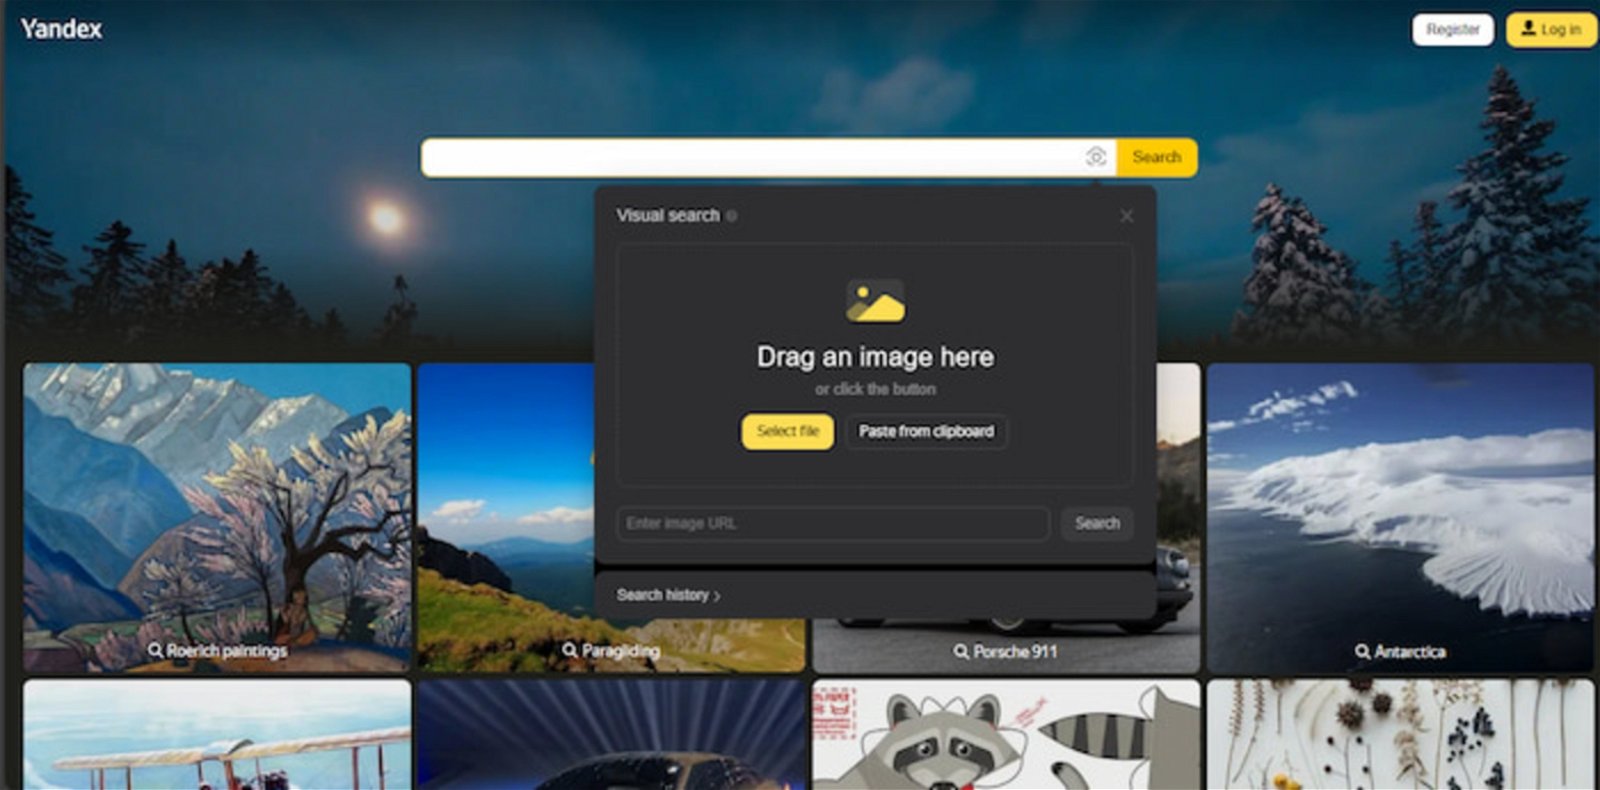 Yandex se posiciona como una interesante alternativa a Google, y también permite realizar búsquedas de imágenes de forma avanzada